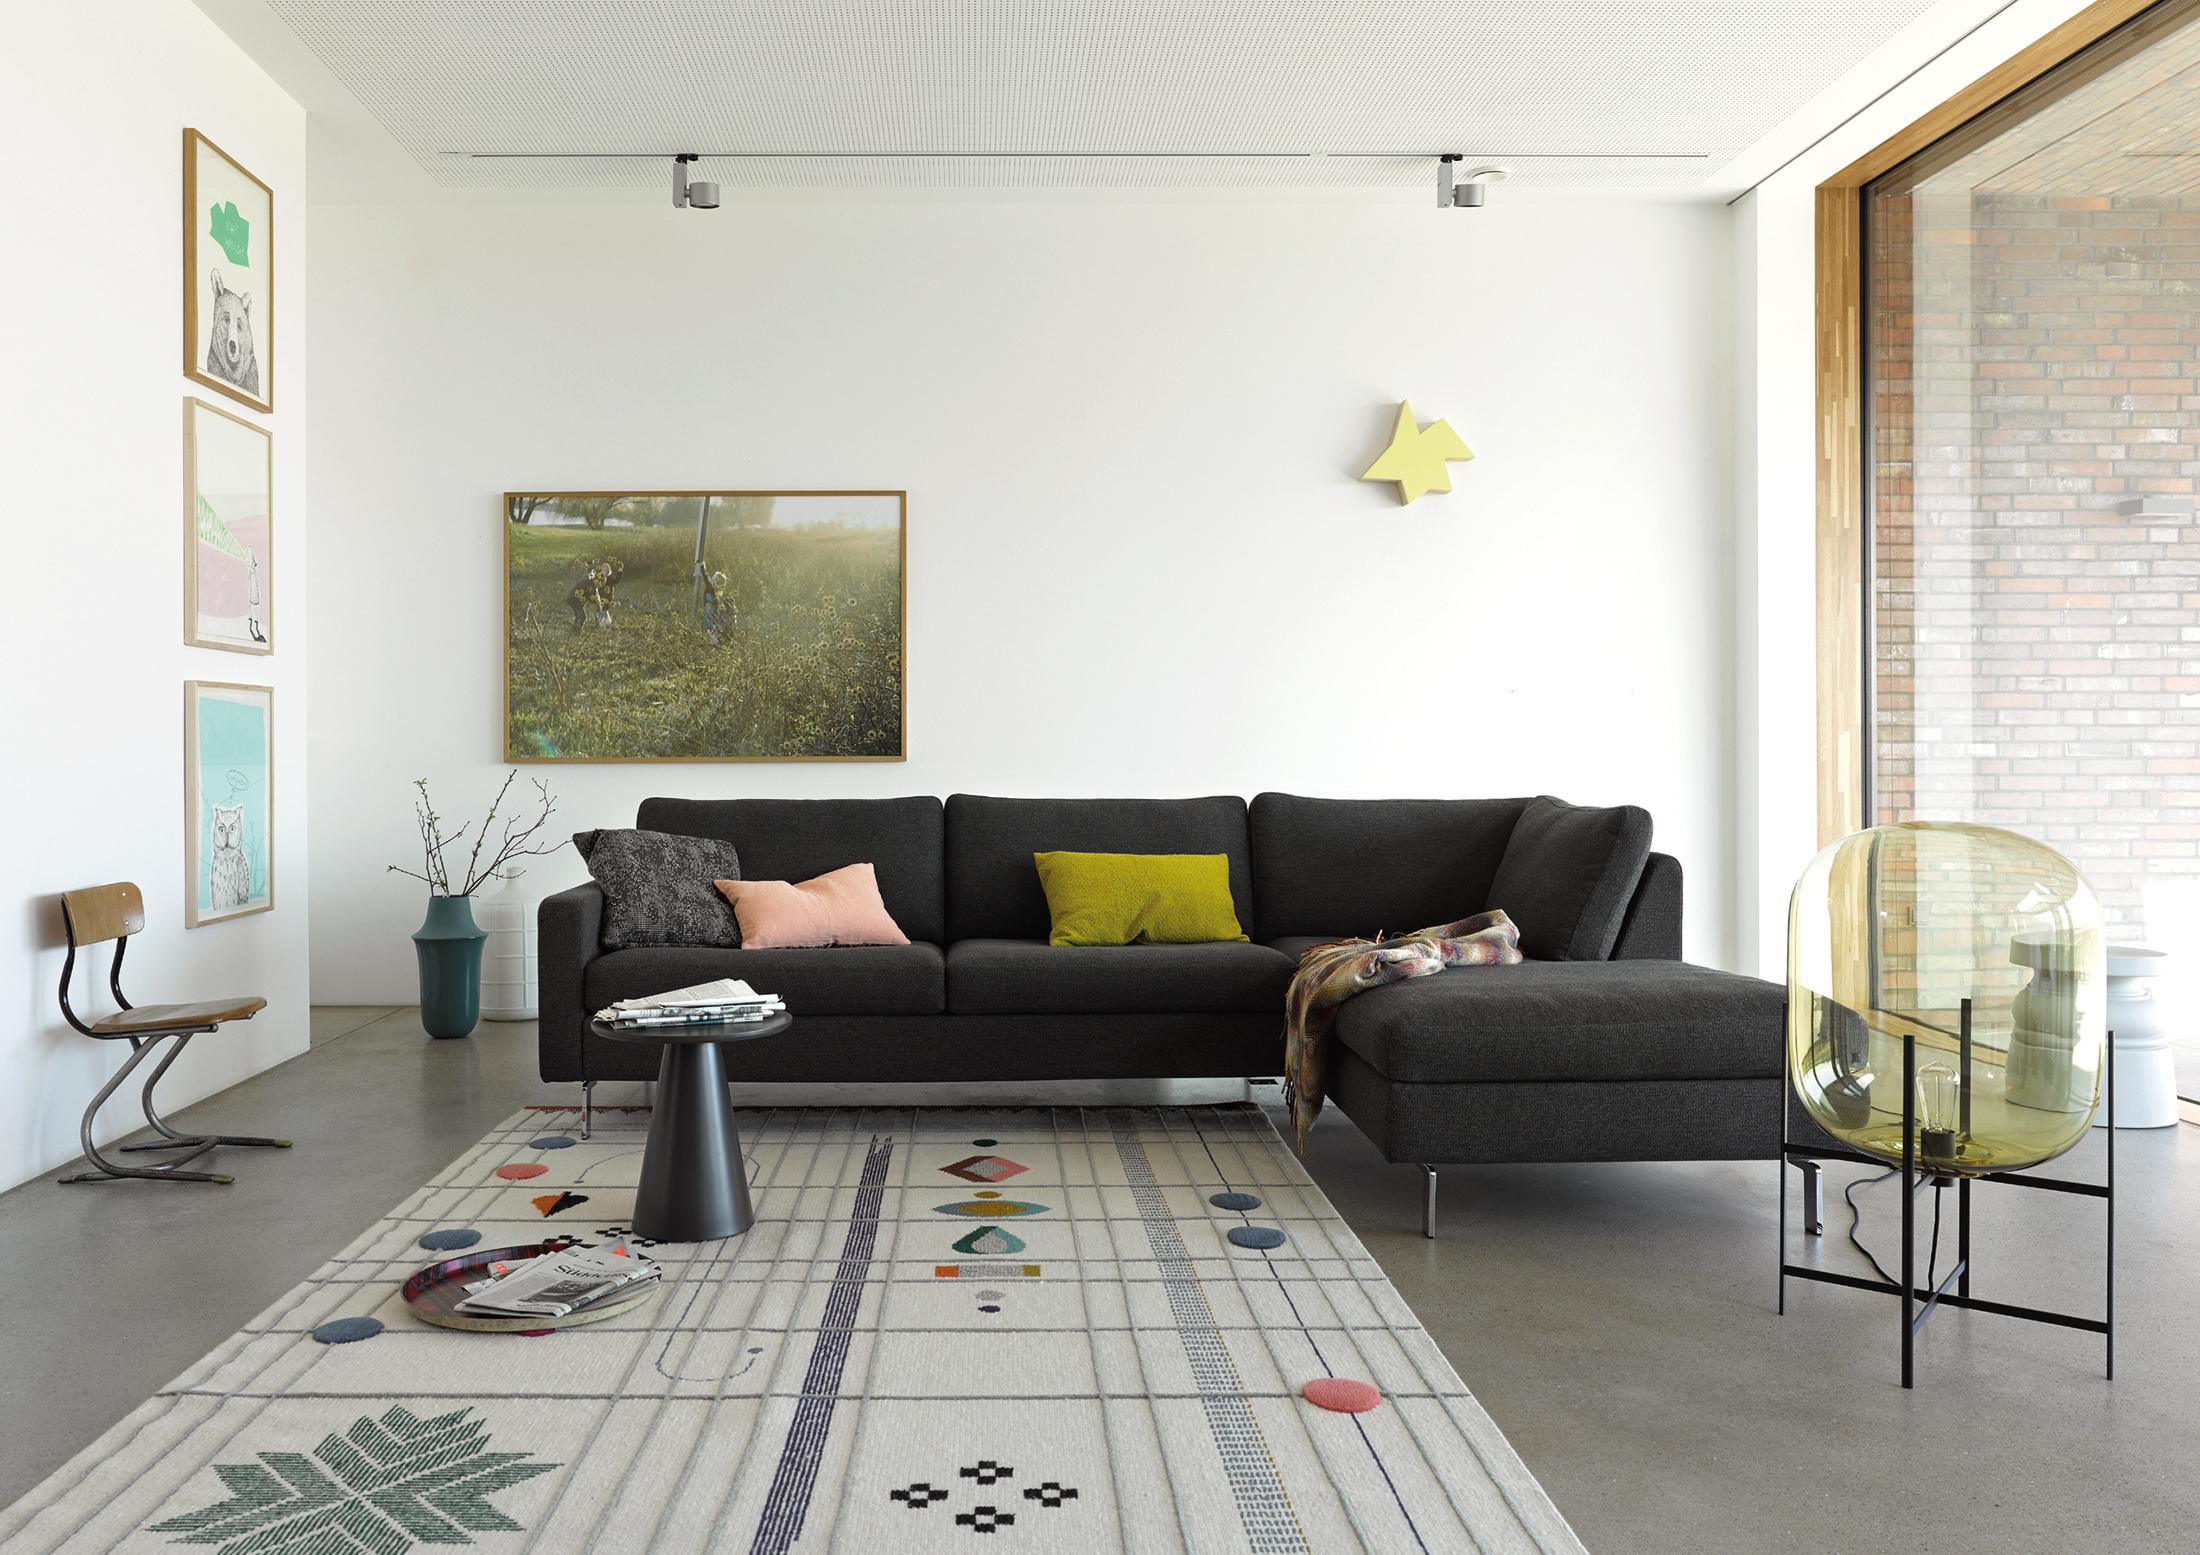 Gemusterter Teppich als Eyecatcher #stuhl #couchtisch #teppich #tagesdecke #sofa #grauessofa #zimmergestaltung ©COR